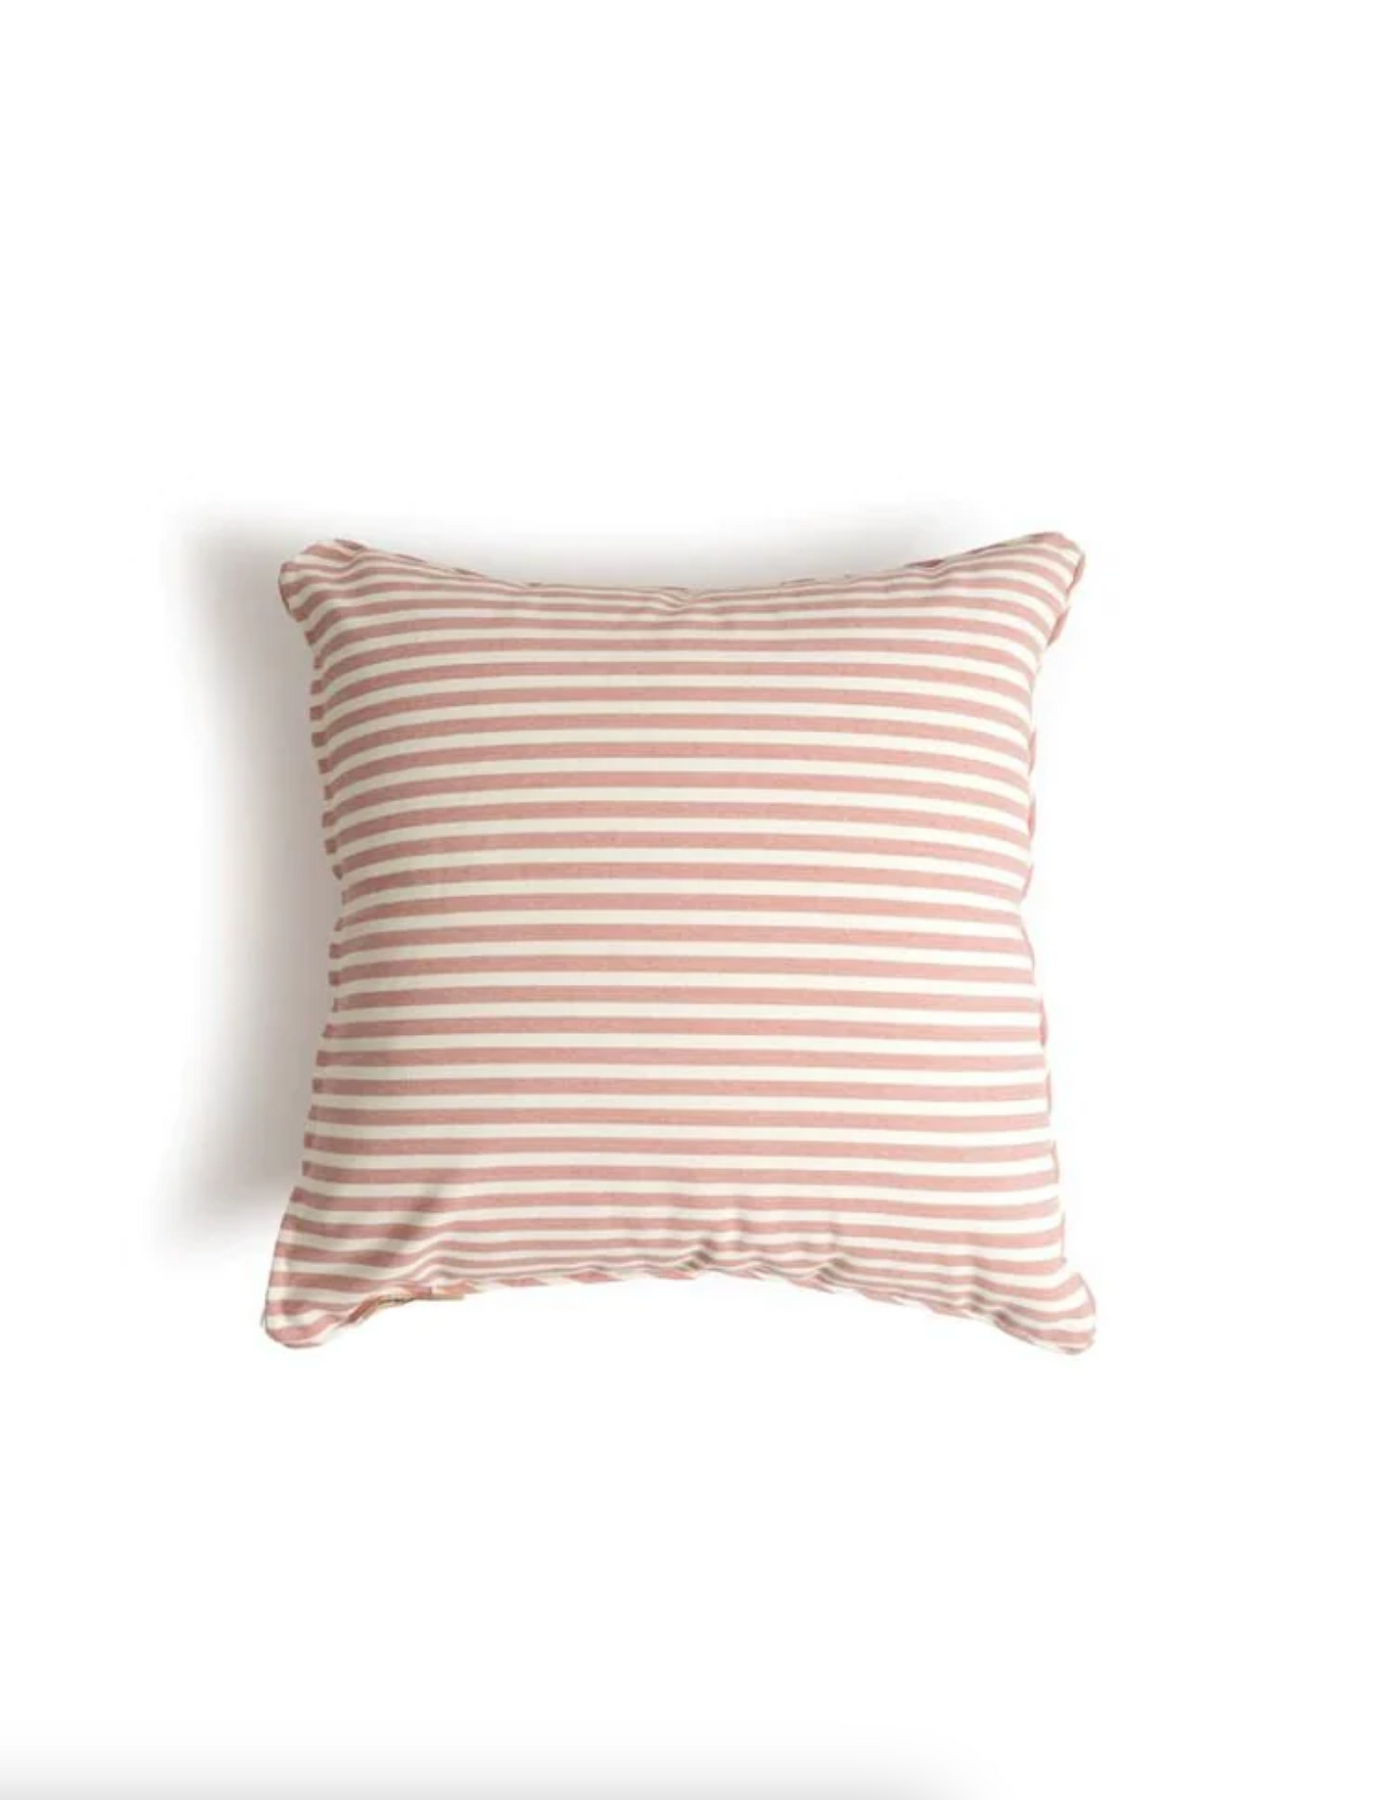 Lauren's Pink Stripe Outdoor Pillow | 18x18